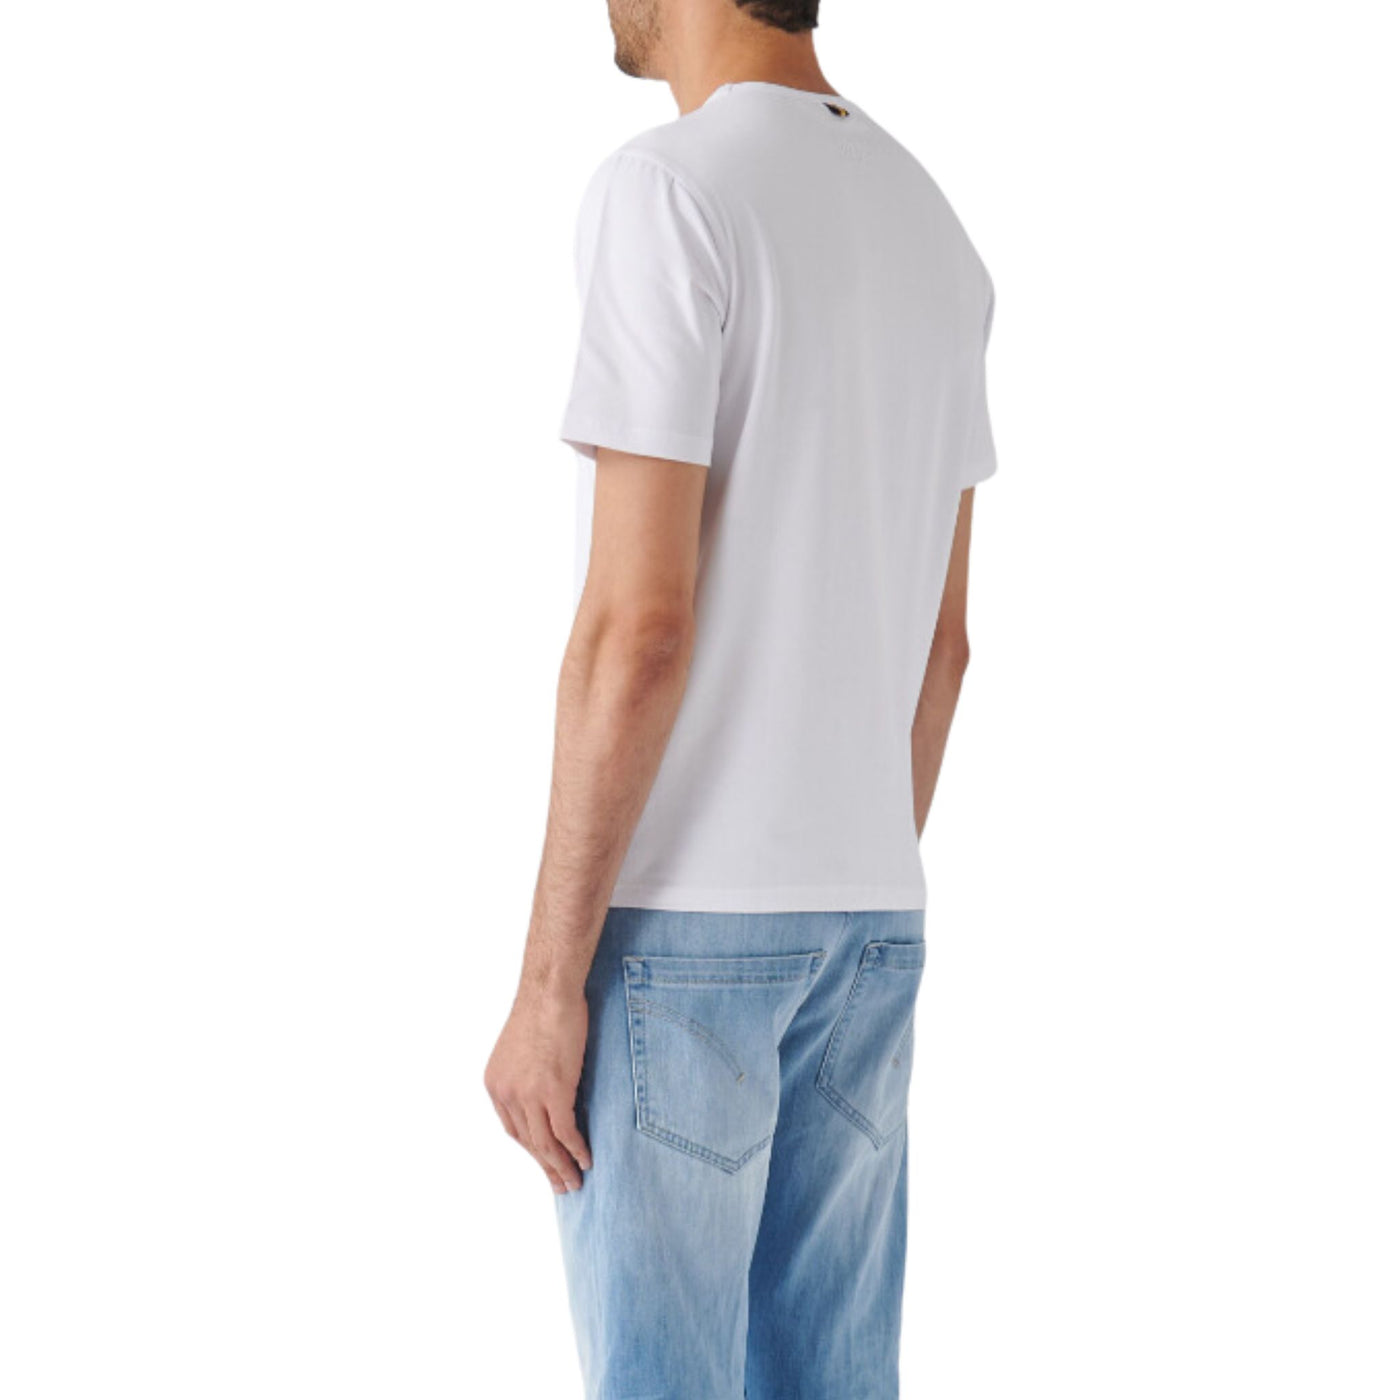 Retro modello con T-shirt in cotone stretch con maniche corte e girocollo e logo ricamato sul petto tono su tono